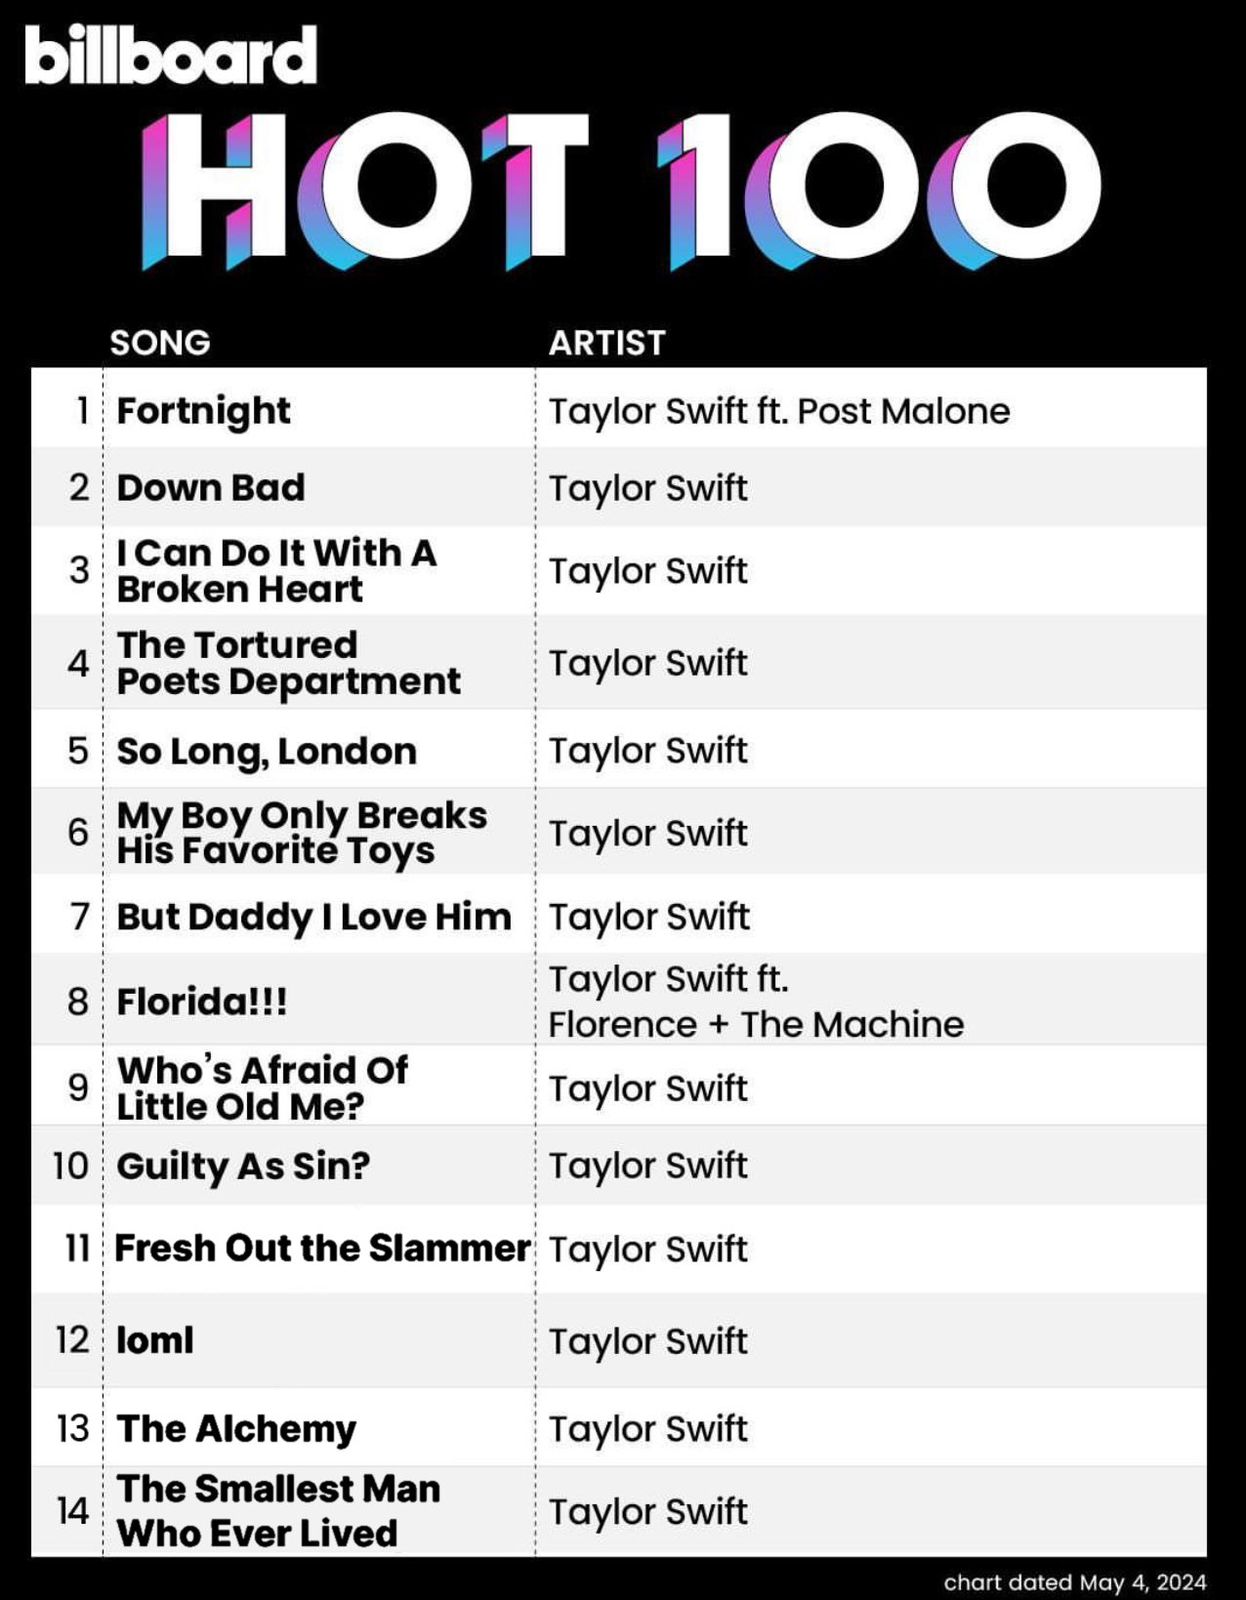 Top 14 da Billboard Hot 100